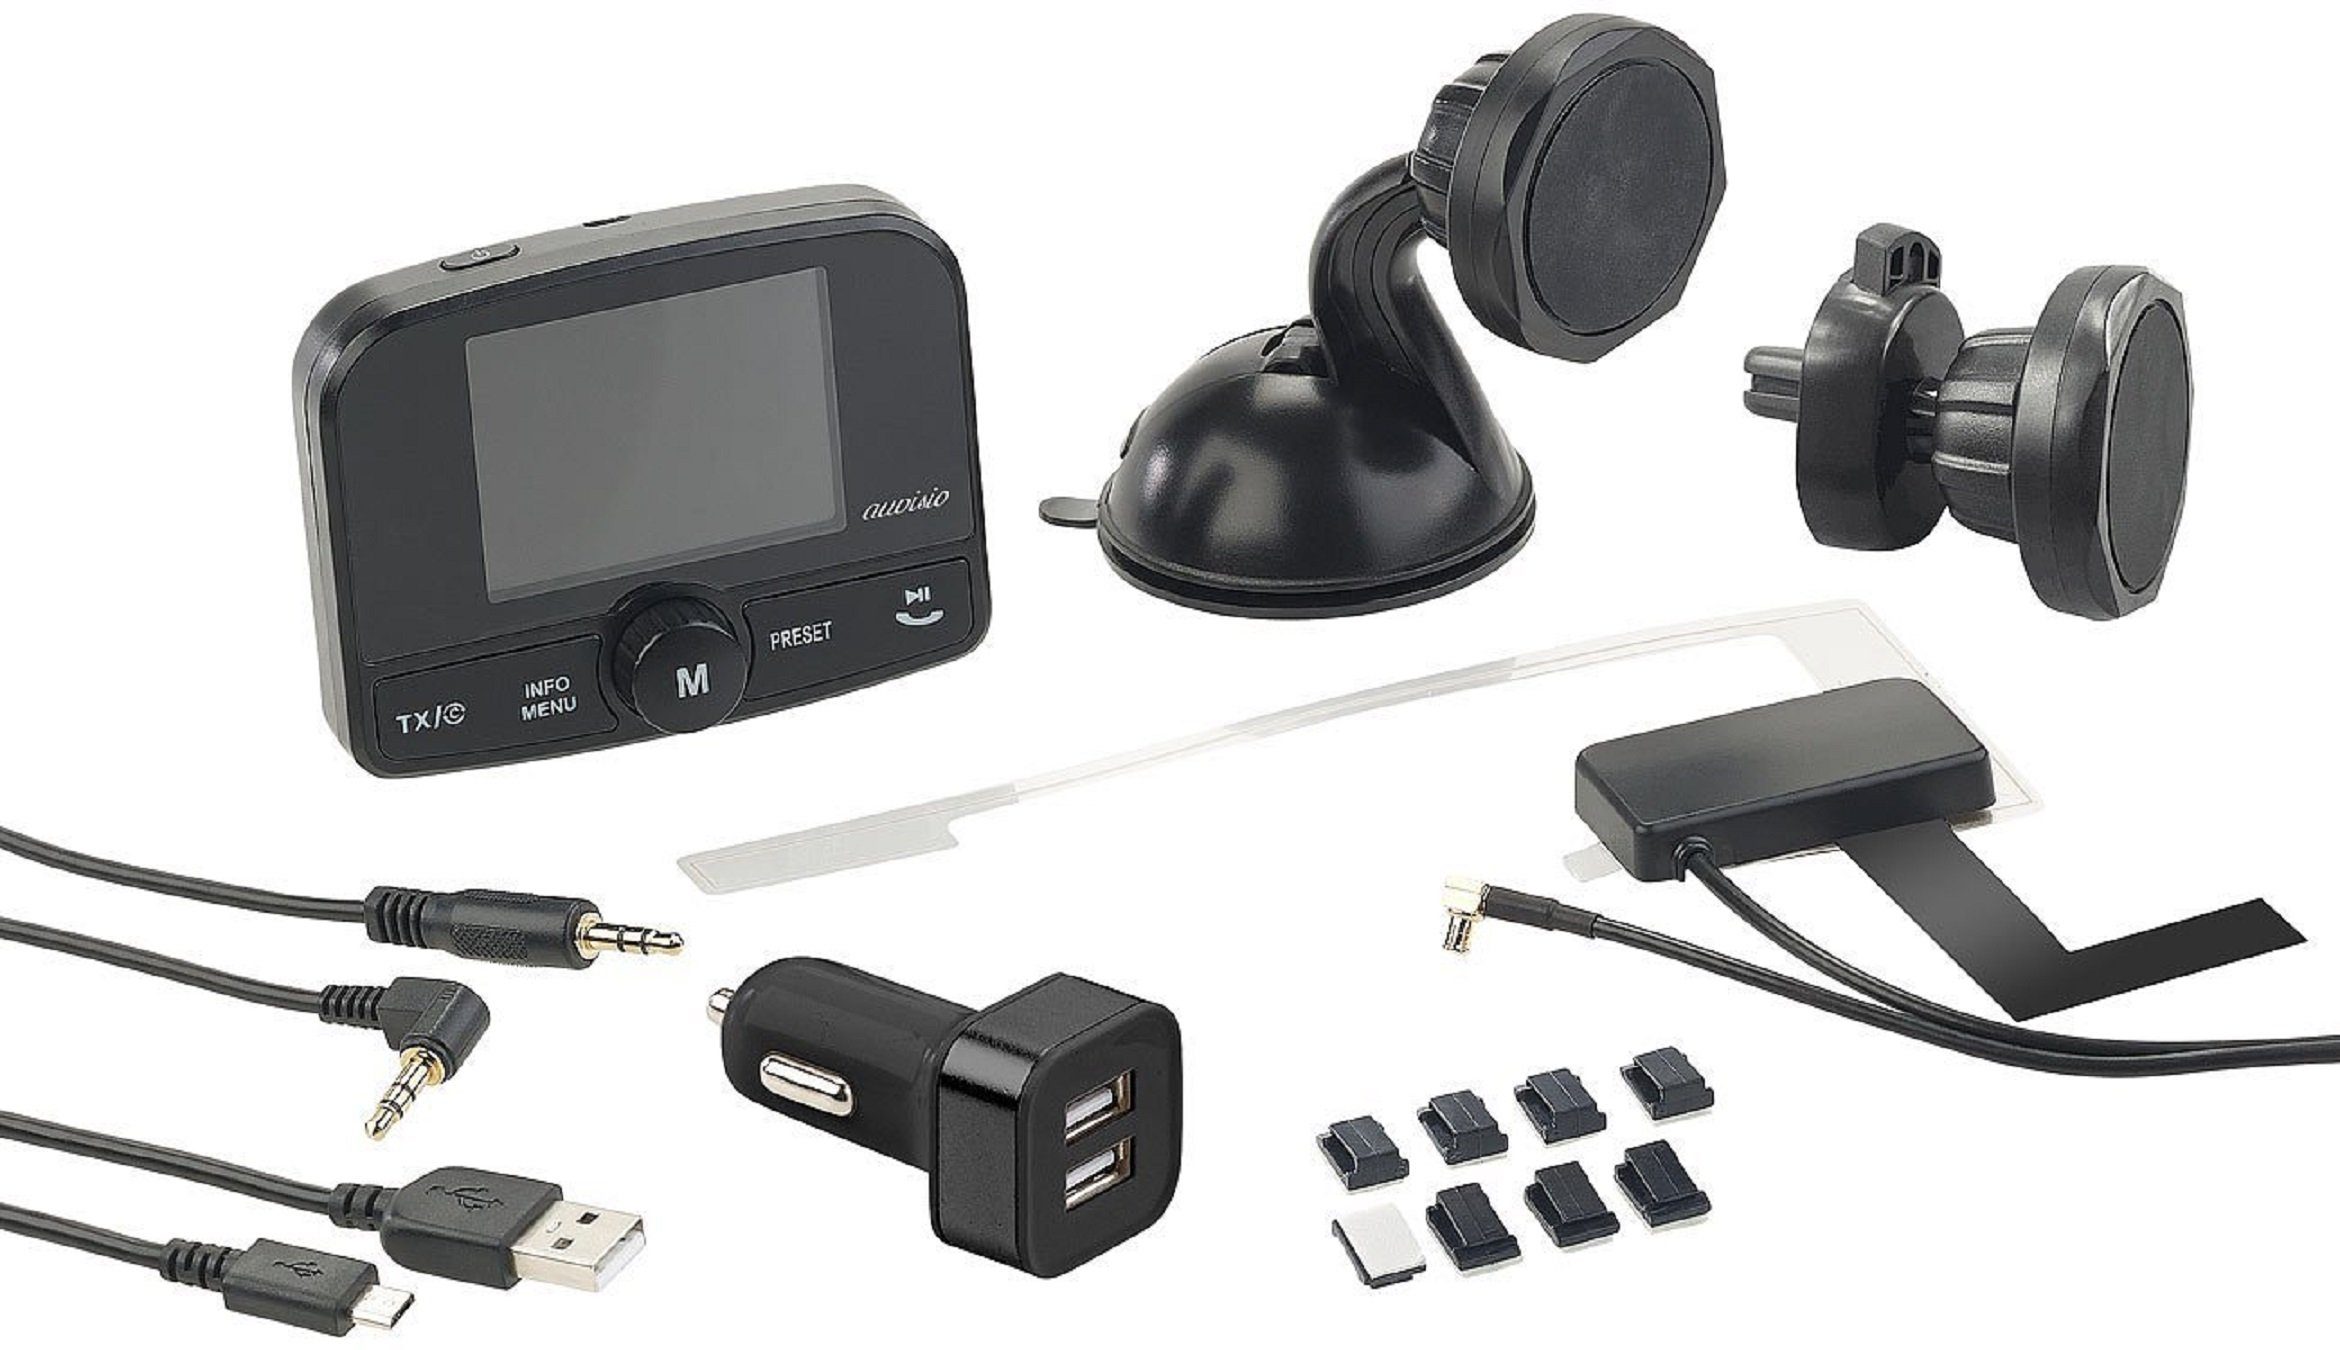 Empfänger Audio-Übertragung per KFZ-Transmitter UKW-Signal Wiedergabe Kfz-DAB+ Micro-USB, microSD-Karte, FM-Transmitter Bluetooth von 3,5-mm-Klinke, zu FMX-640.dab Micro-SD auvisio MP3 Freisprechen Micro-USB,